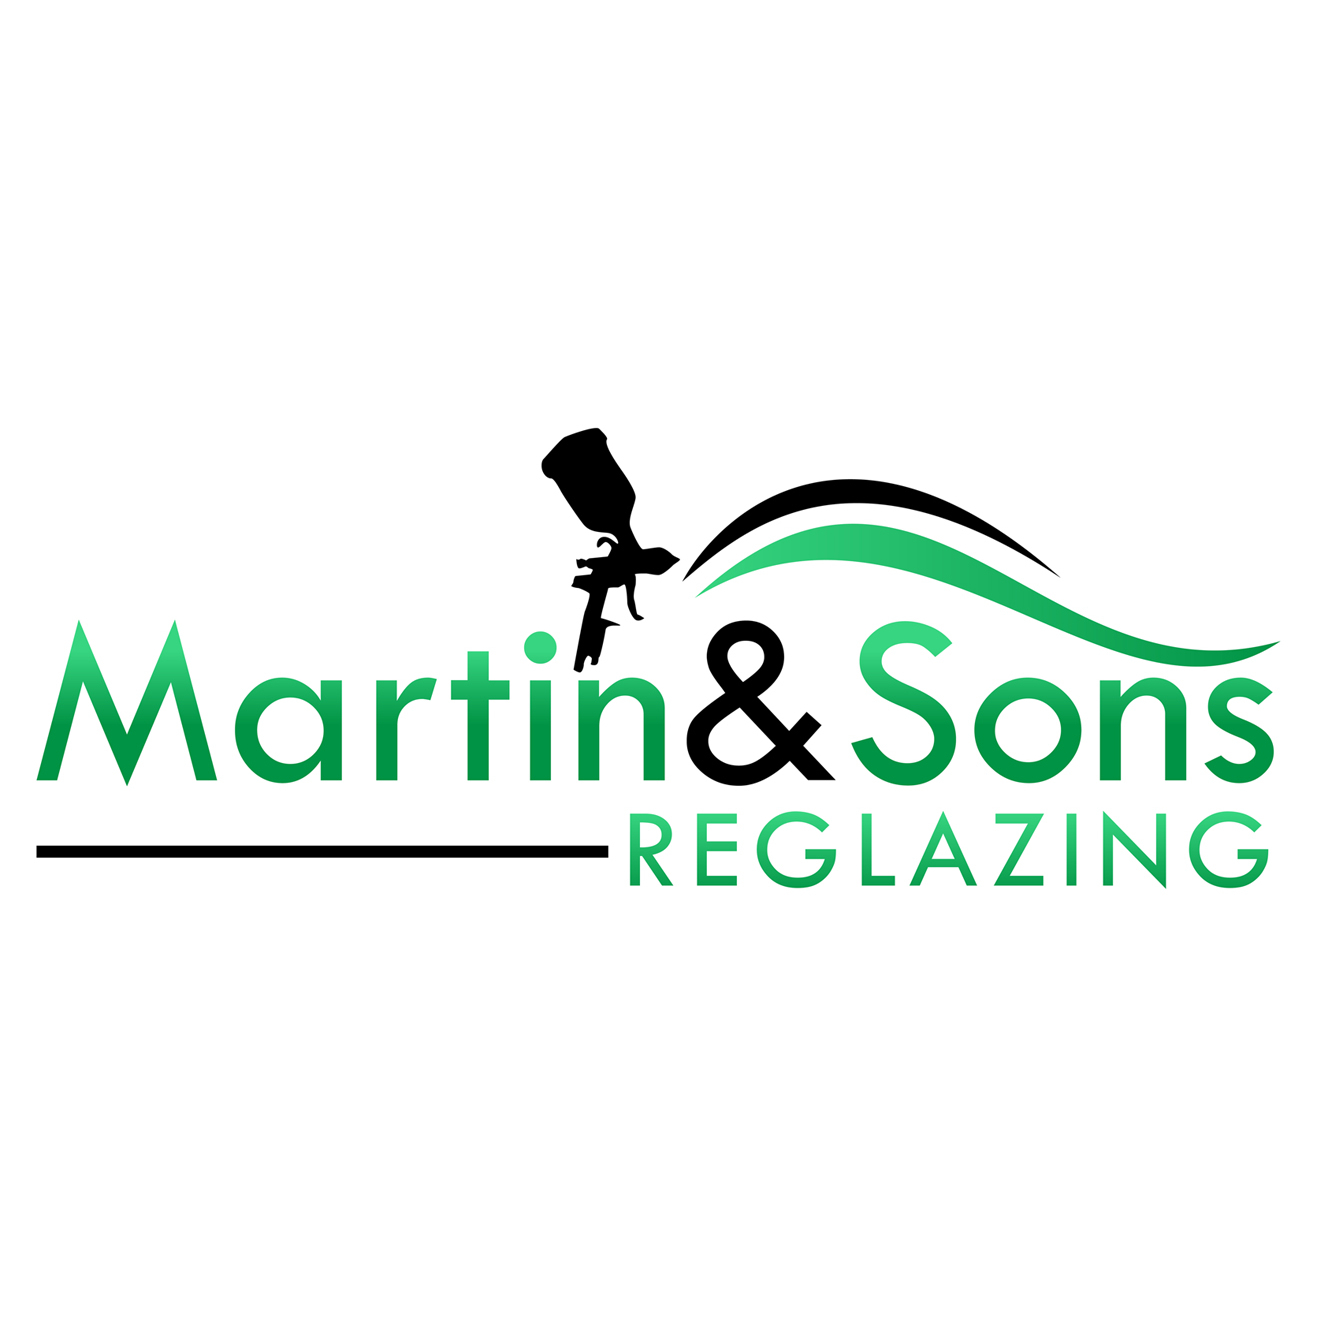 Martin & Sons Reglazing, Inc. - Holt, MI - (517)719-6630 | ShowMeLocal.com